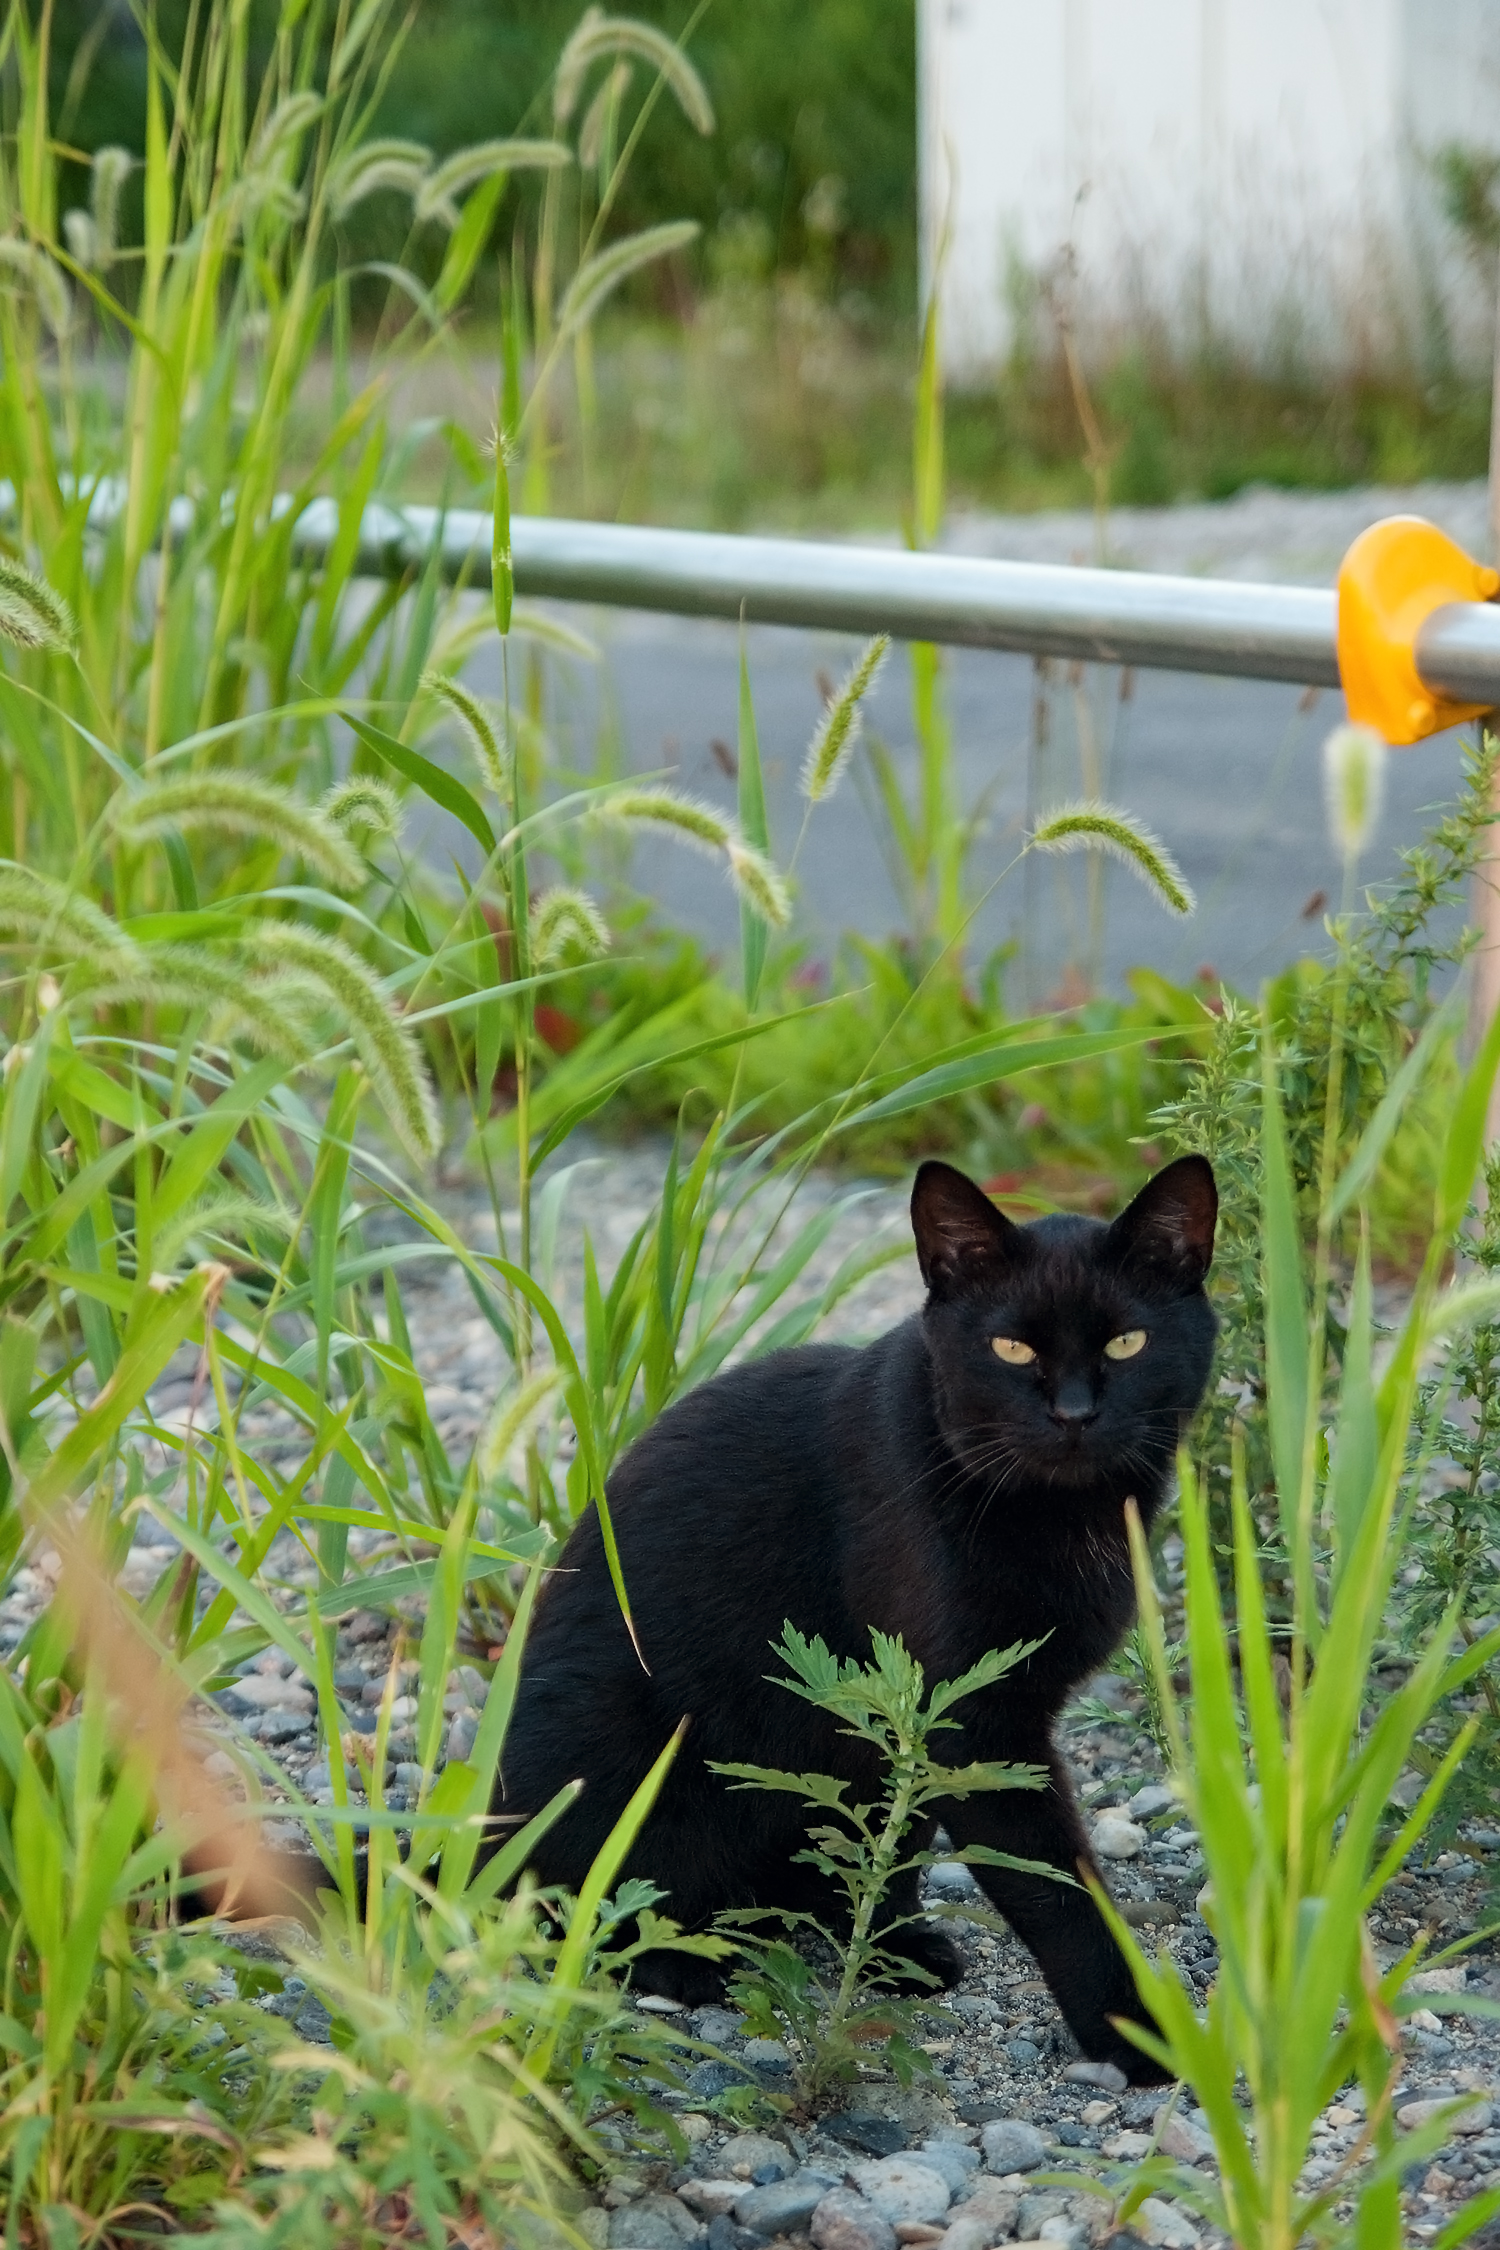 函館西部地区で見かけた黒猫